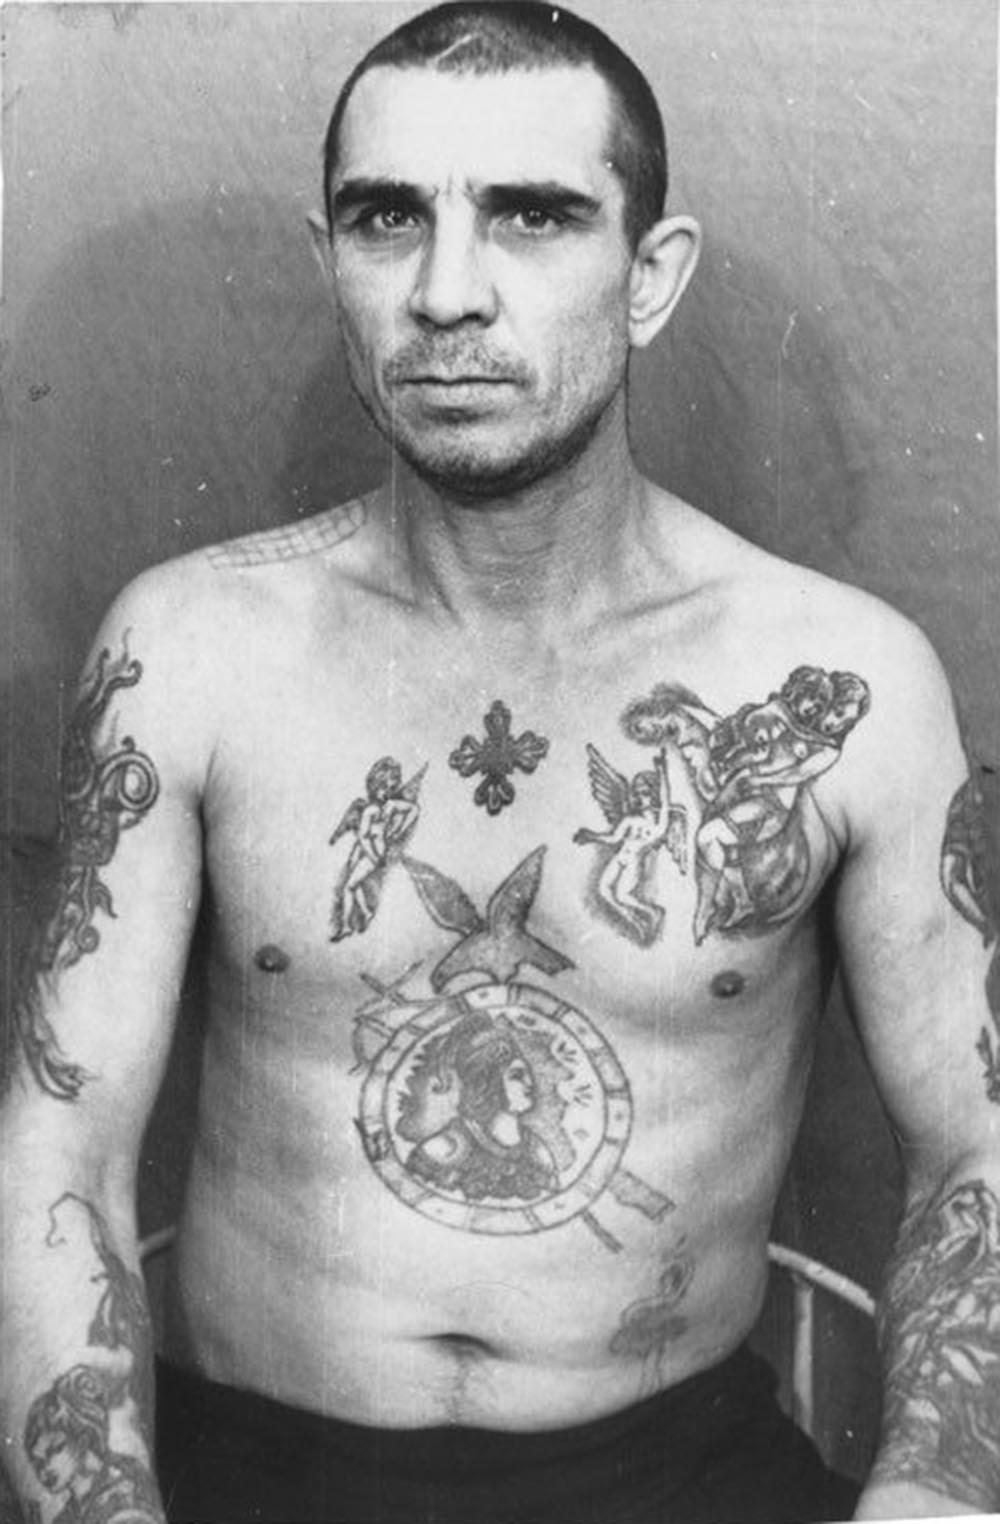 <p>Стилът на татуировките на този затворник издава висок ранг. Той обаче не носи нито звезди, нито пагони, което означава, че не принадлежи към голям клан и няма влияние над другите престъпници.</p>